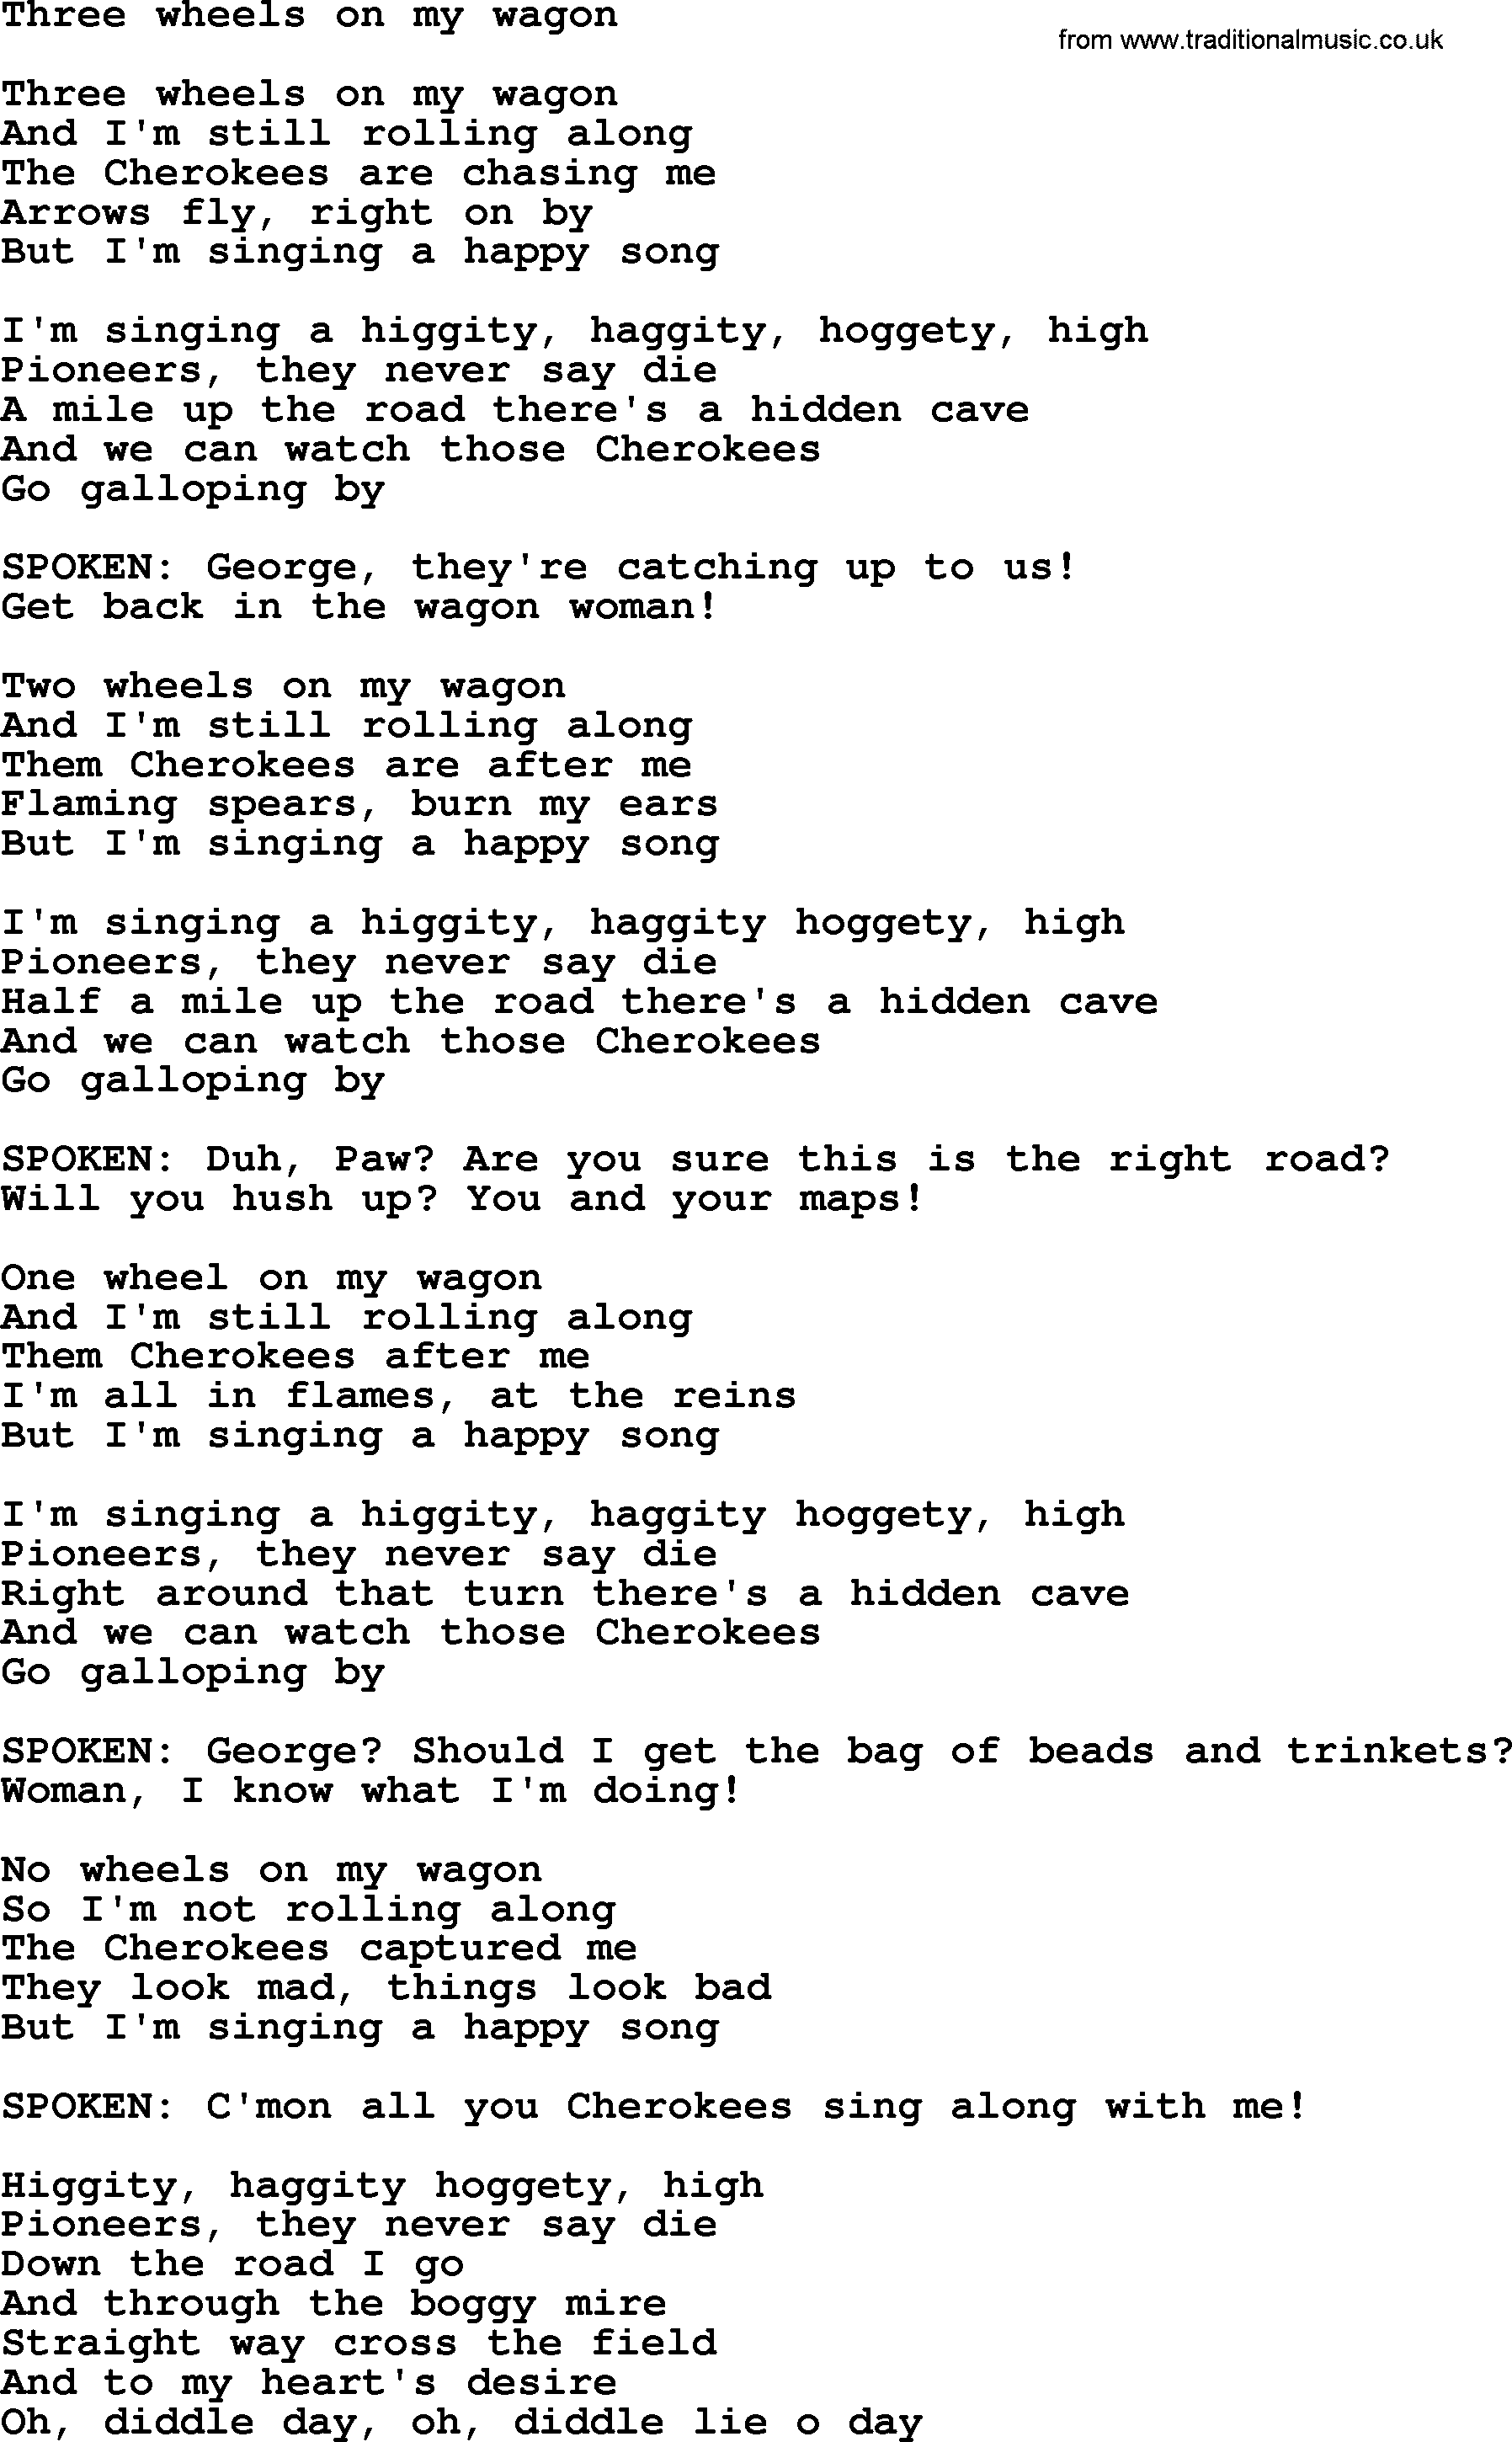 The Byrds song Three Wheels On My Wagon, lyrics